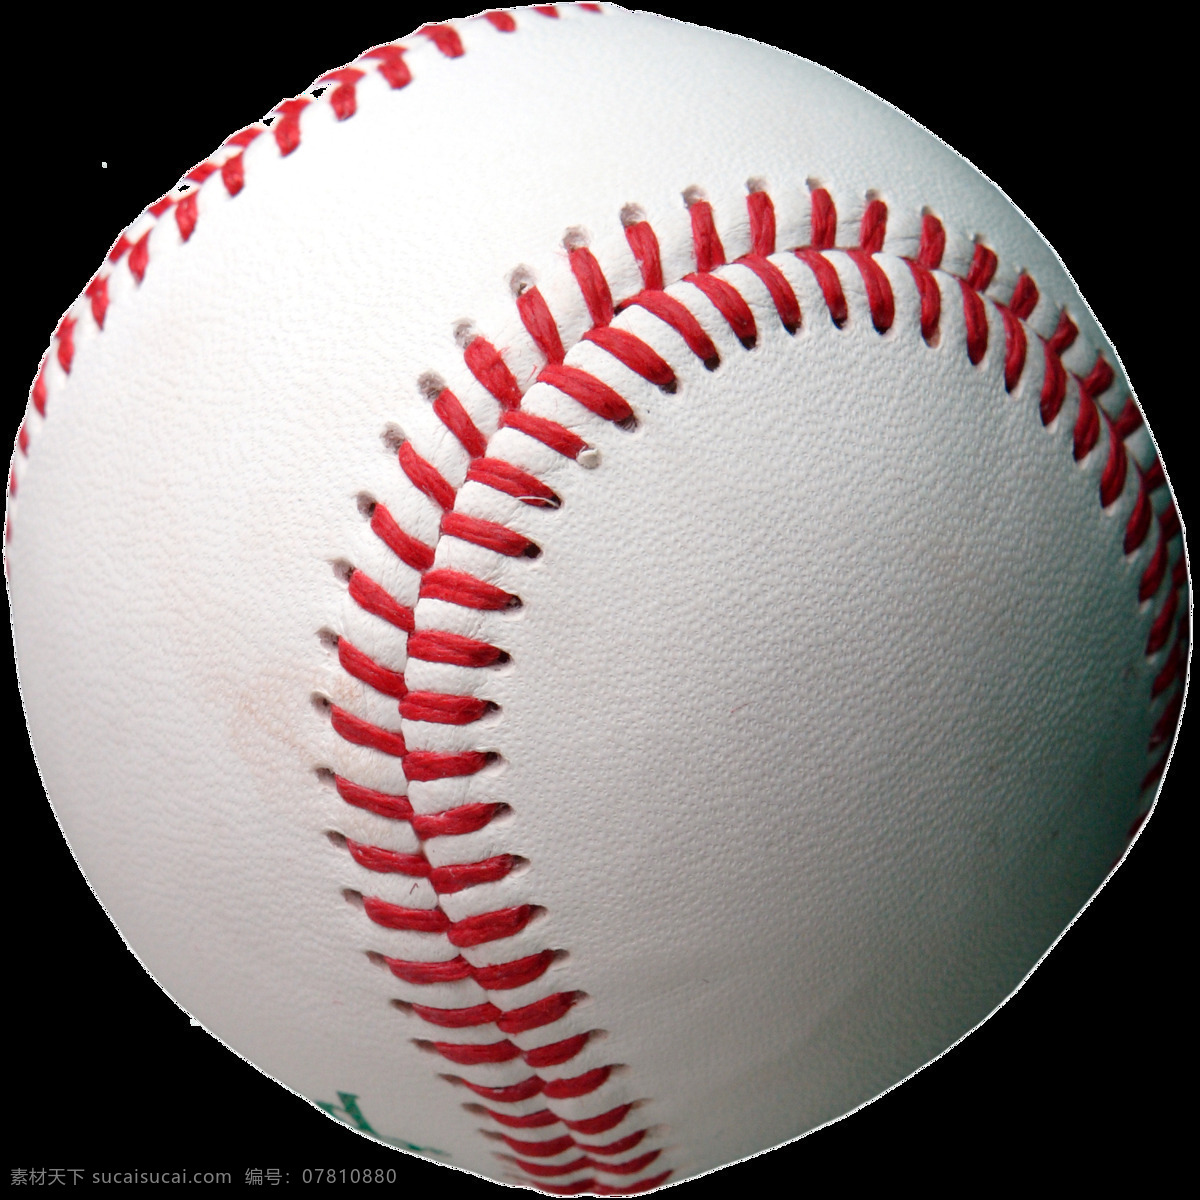 棒球 装备 免 抠 透明 图 层 棒球素材 棒球比赛 棒球手套 棒球运动员 美国职业棒球 打棒球 棒球手 棒球海报 棒球简笔画 棒球棒 棒球图片 棒球器材 棒球元素 棒球装备